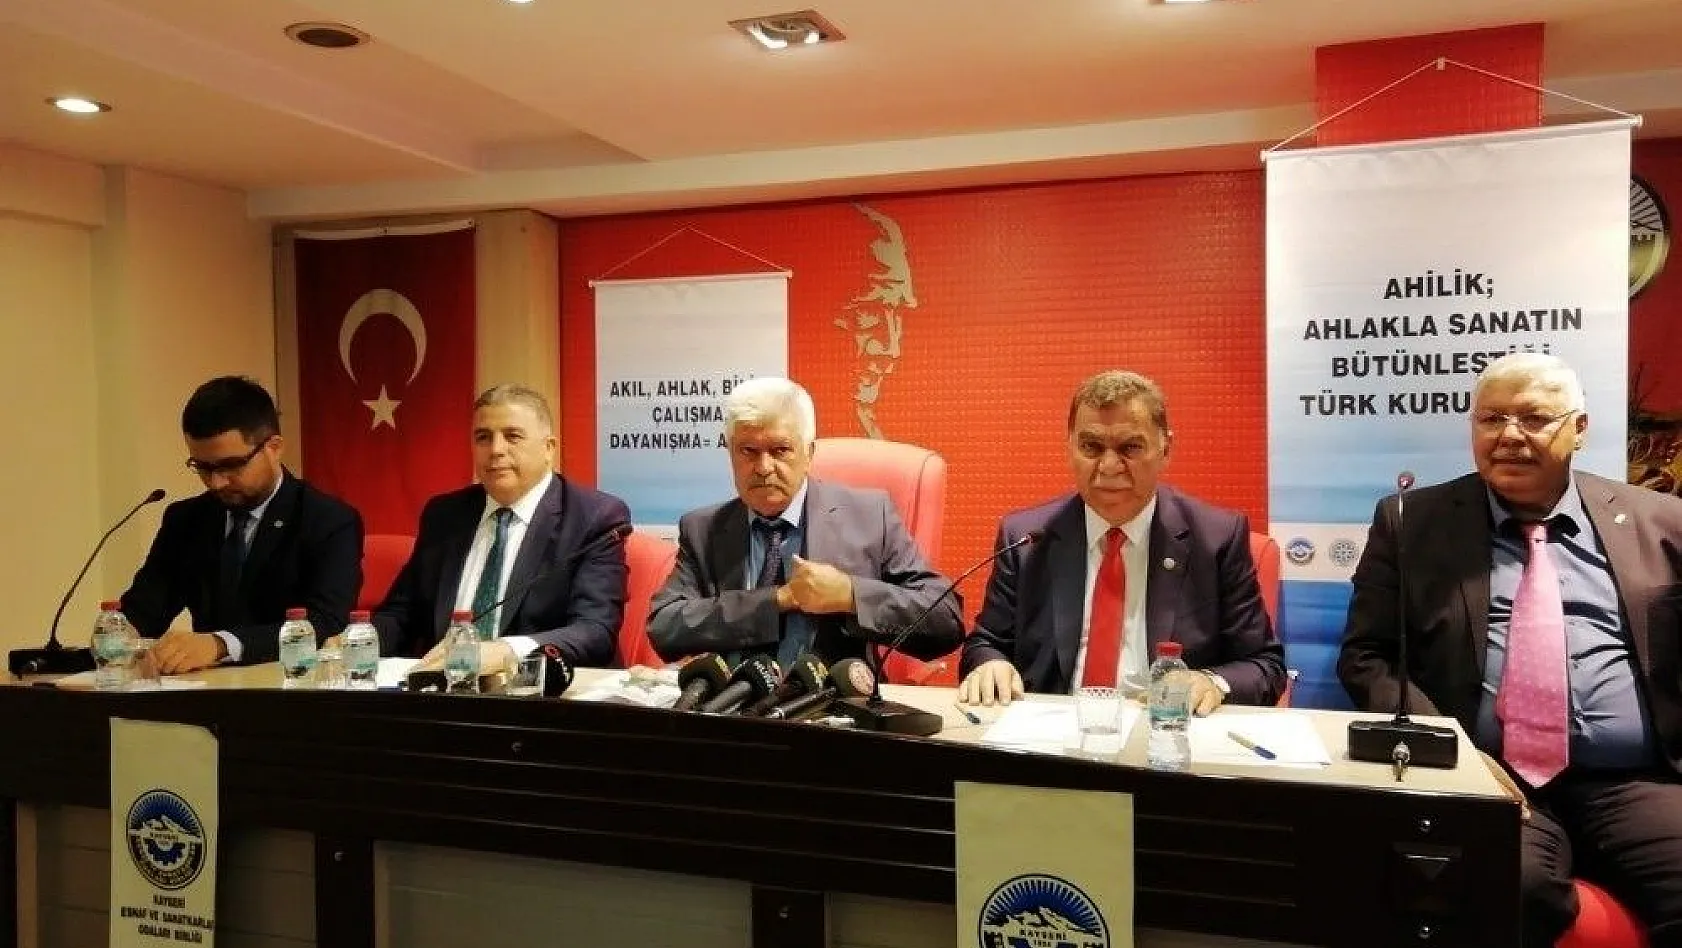 Kayseri Esnaf ve Sanatkarlar Kredi ve Kefalet Kooperatifi Başkanı Mustafa Alan: 'Ahi Evran'ı geri getiremeyiz ama prensiplerini gelecek kuşaklara aktarmalıyız'
